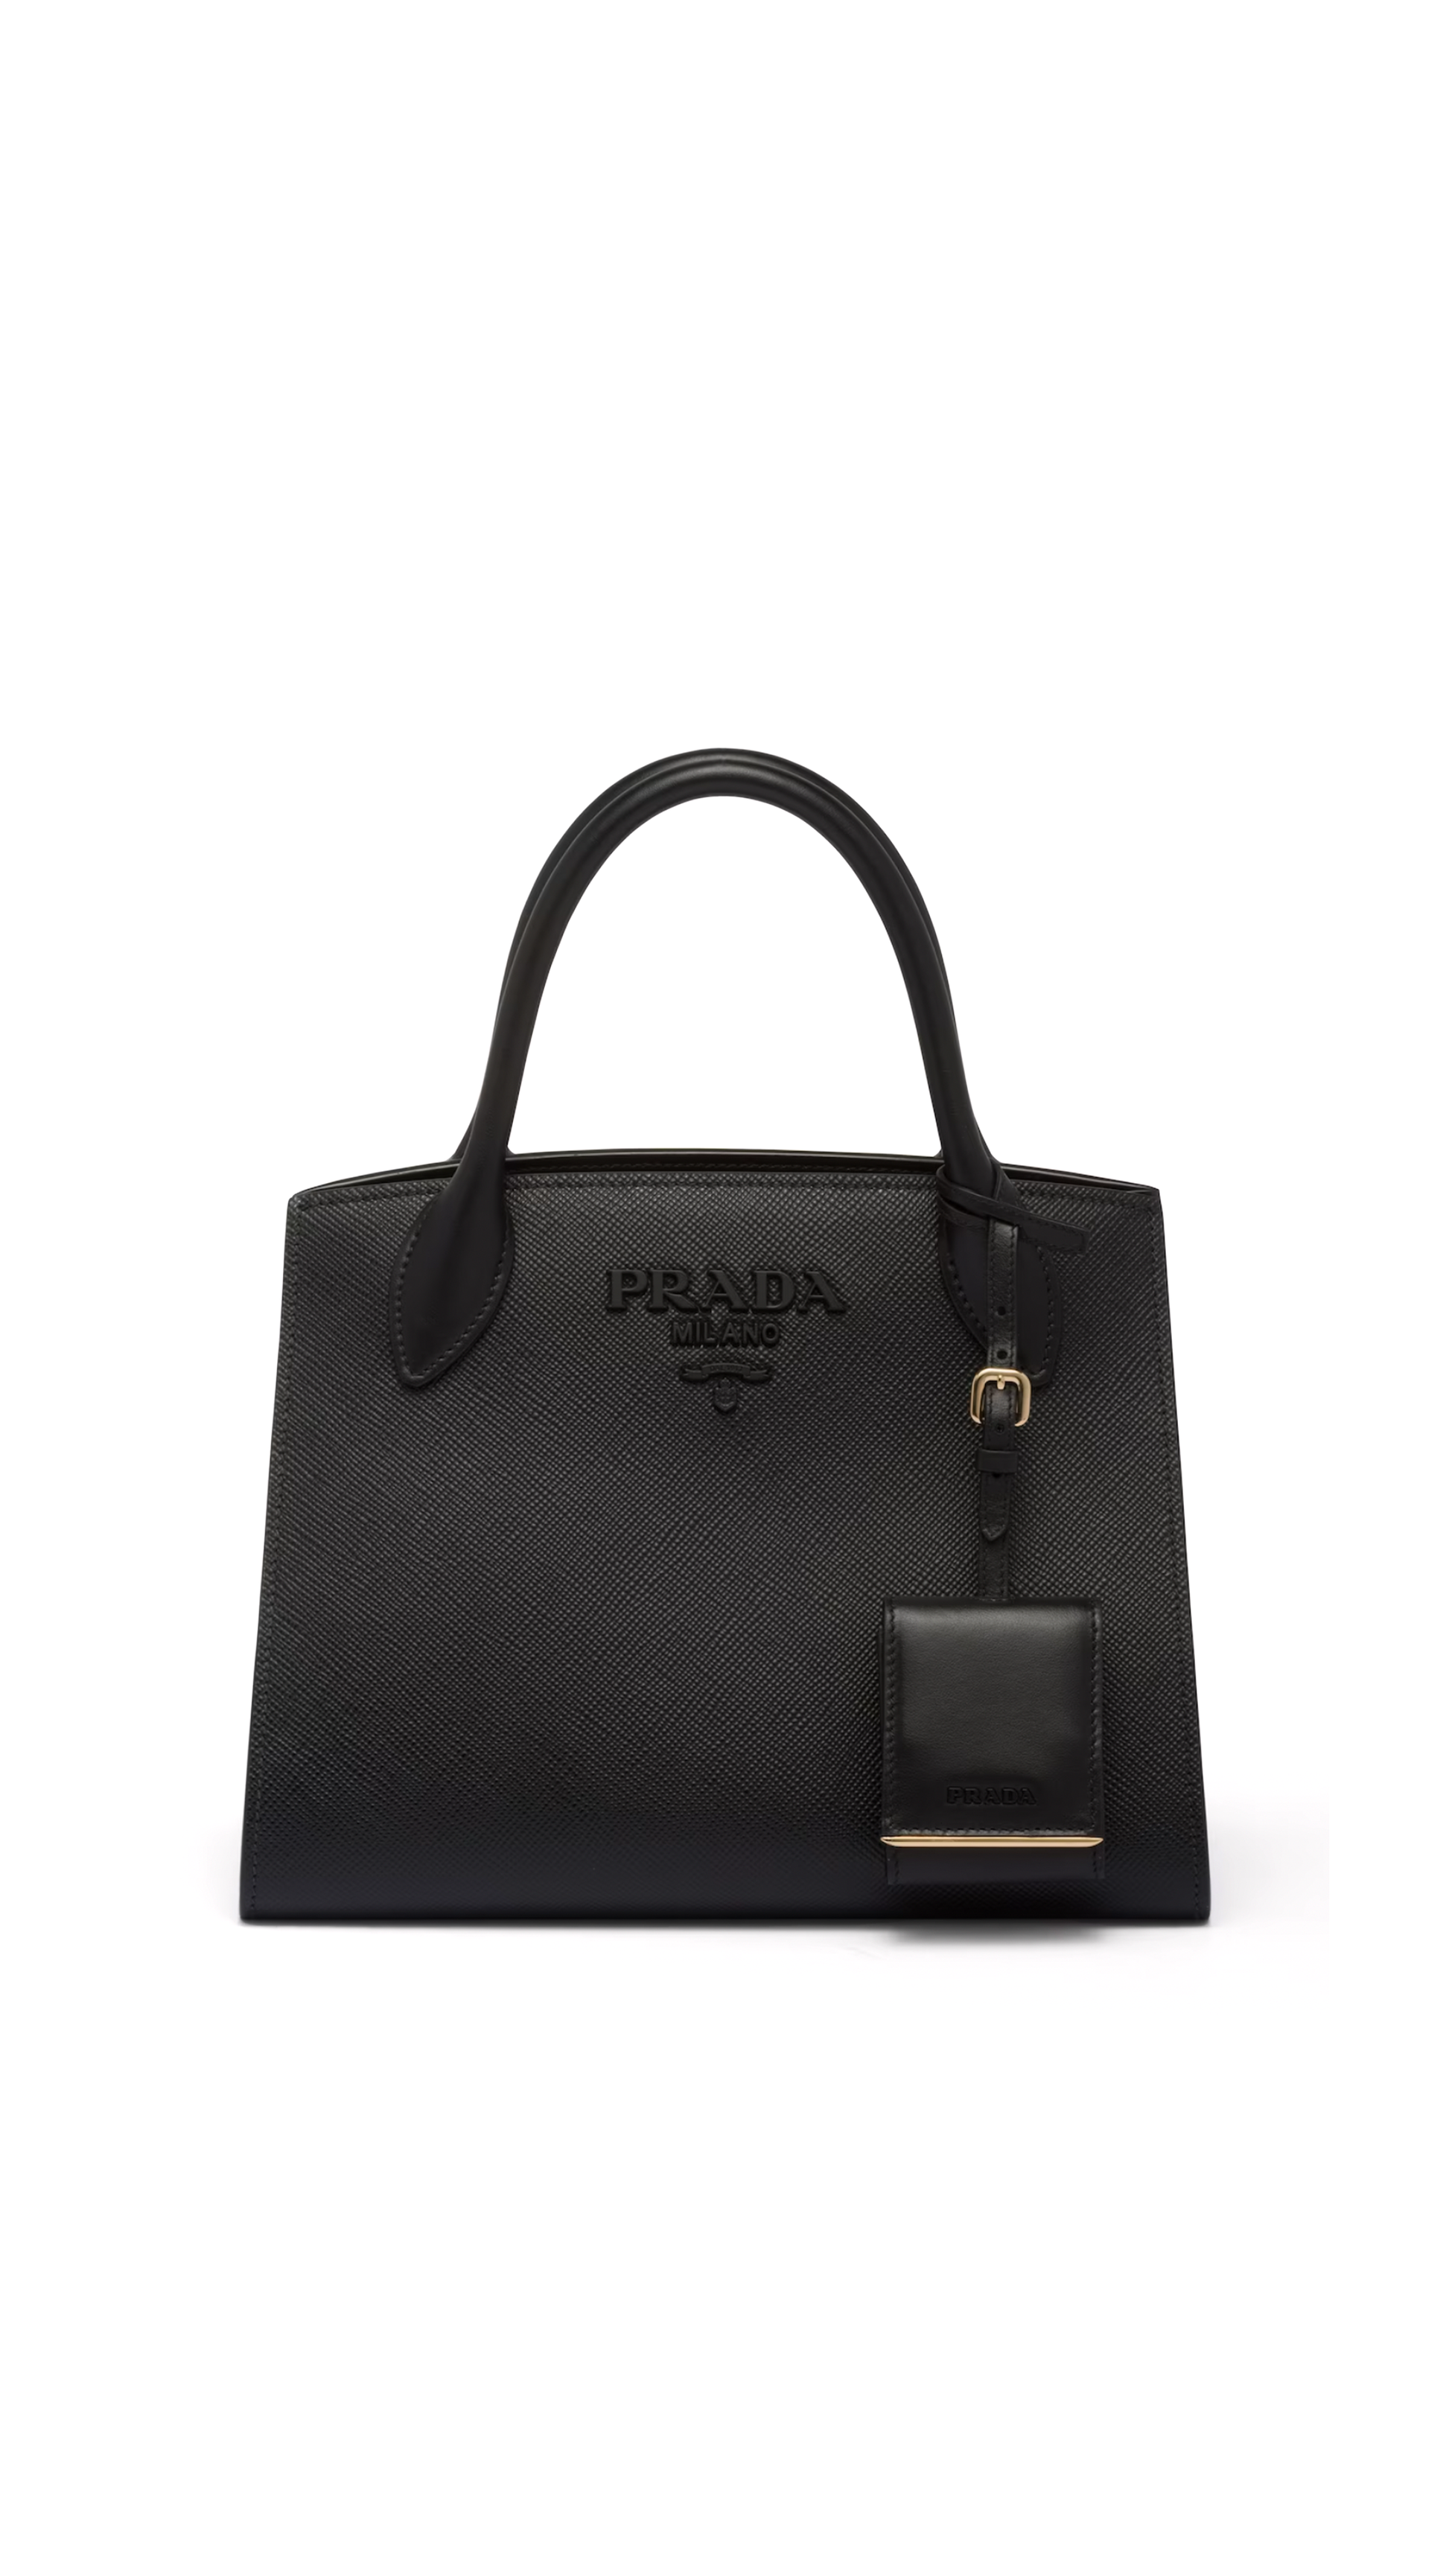 PRADA: Monochrome bag in saffiano leather - Black